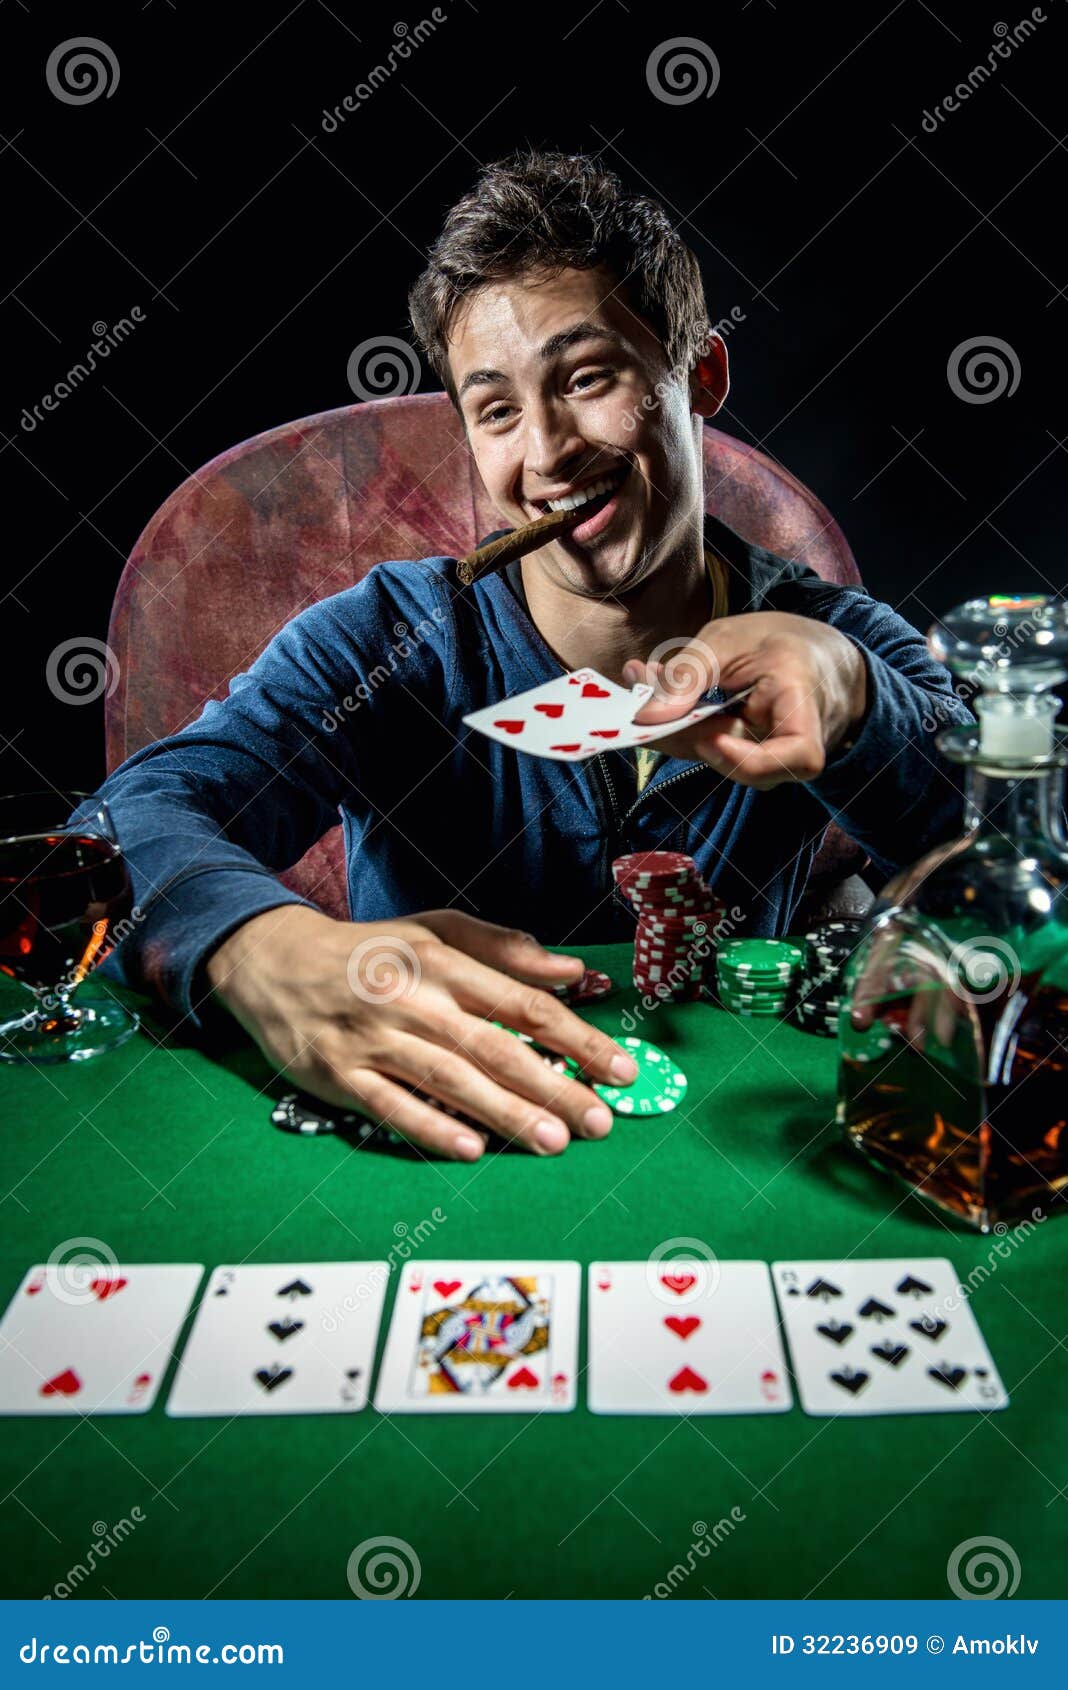 Картф. Игрок в Покер. Игроки за покерным столом. Фотосессия Покер. Мужика за столом покерным.